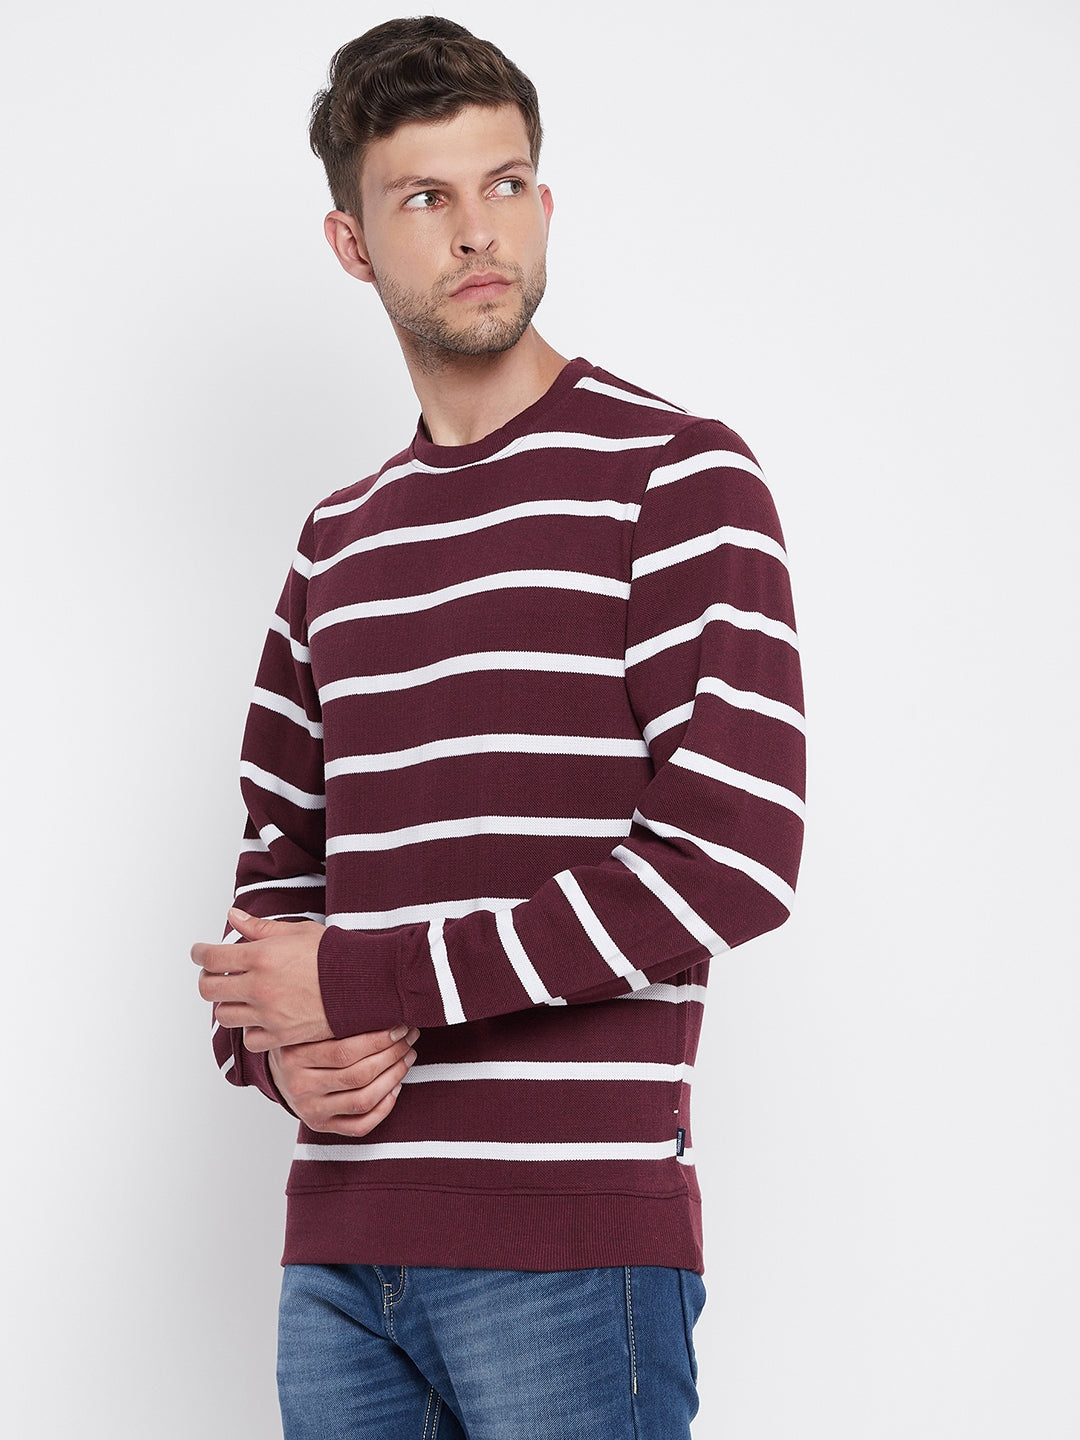 Maroon Striped Round Neck Sweatshirt - Men Sweatshirts